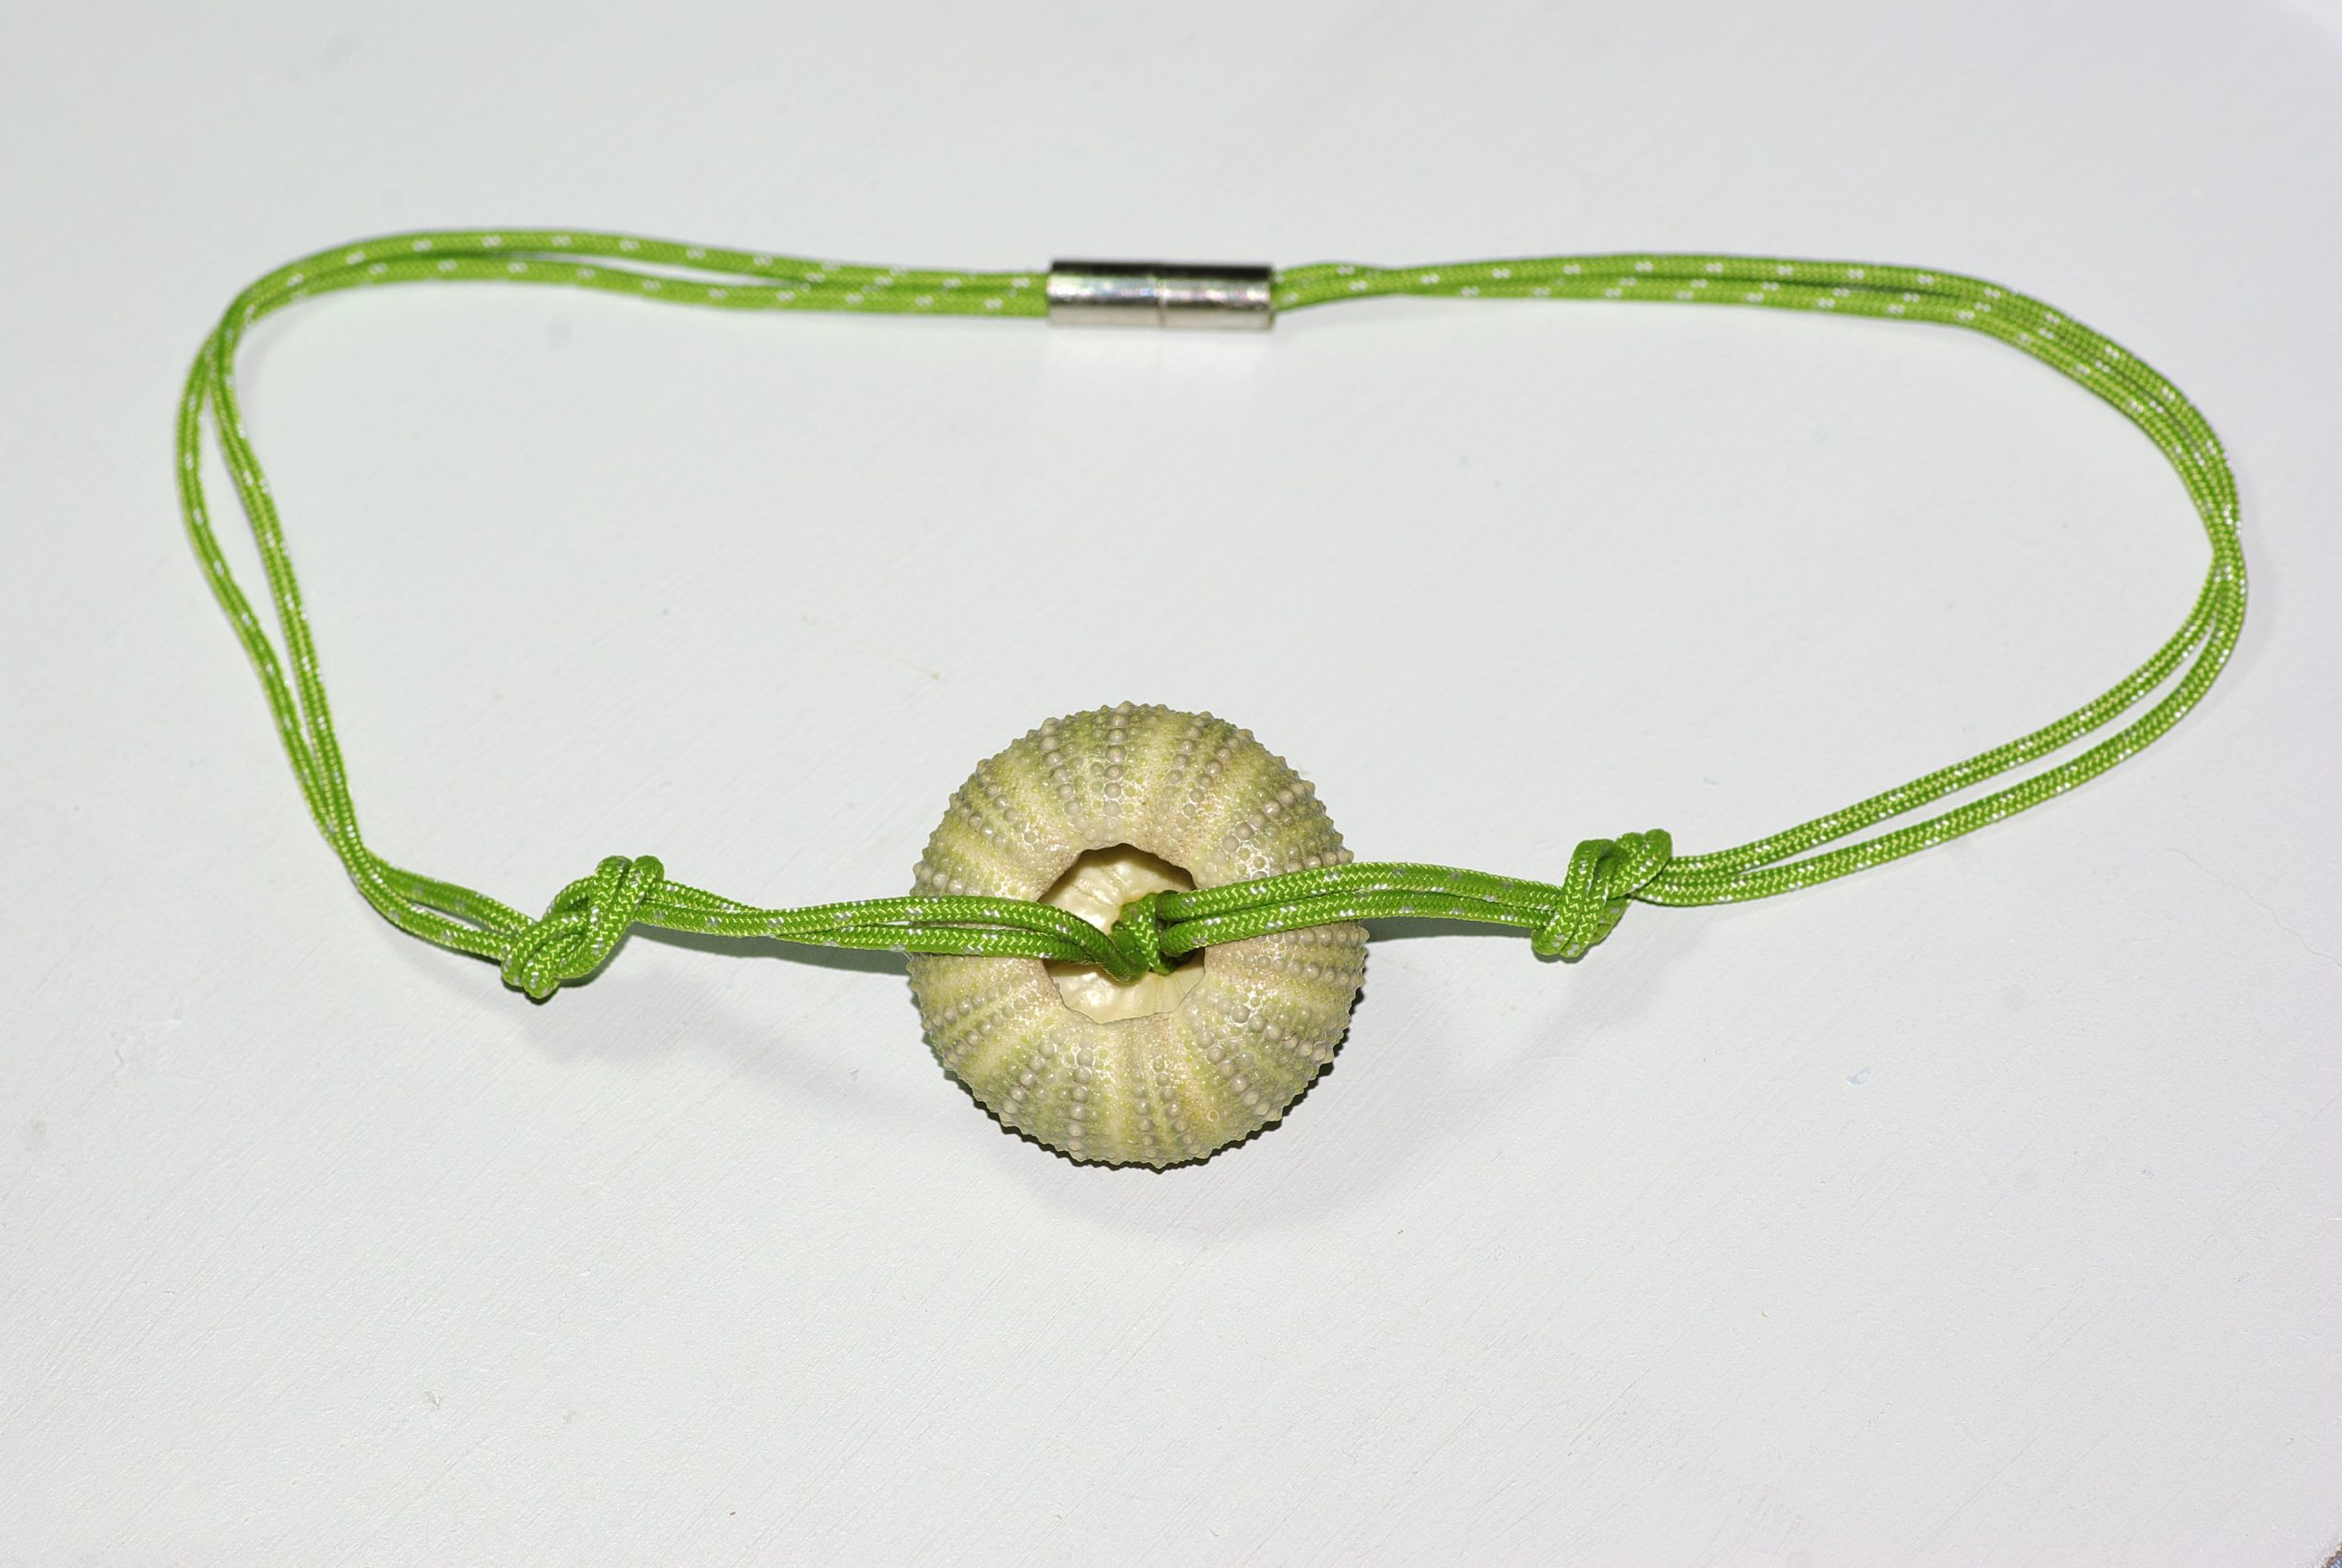 collier en cordelette marine verte nouée et pendentif oursin, on voit le dos de l'oursin